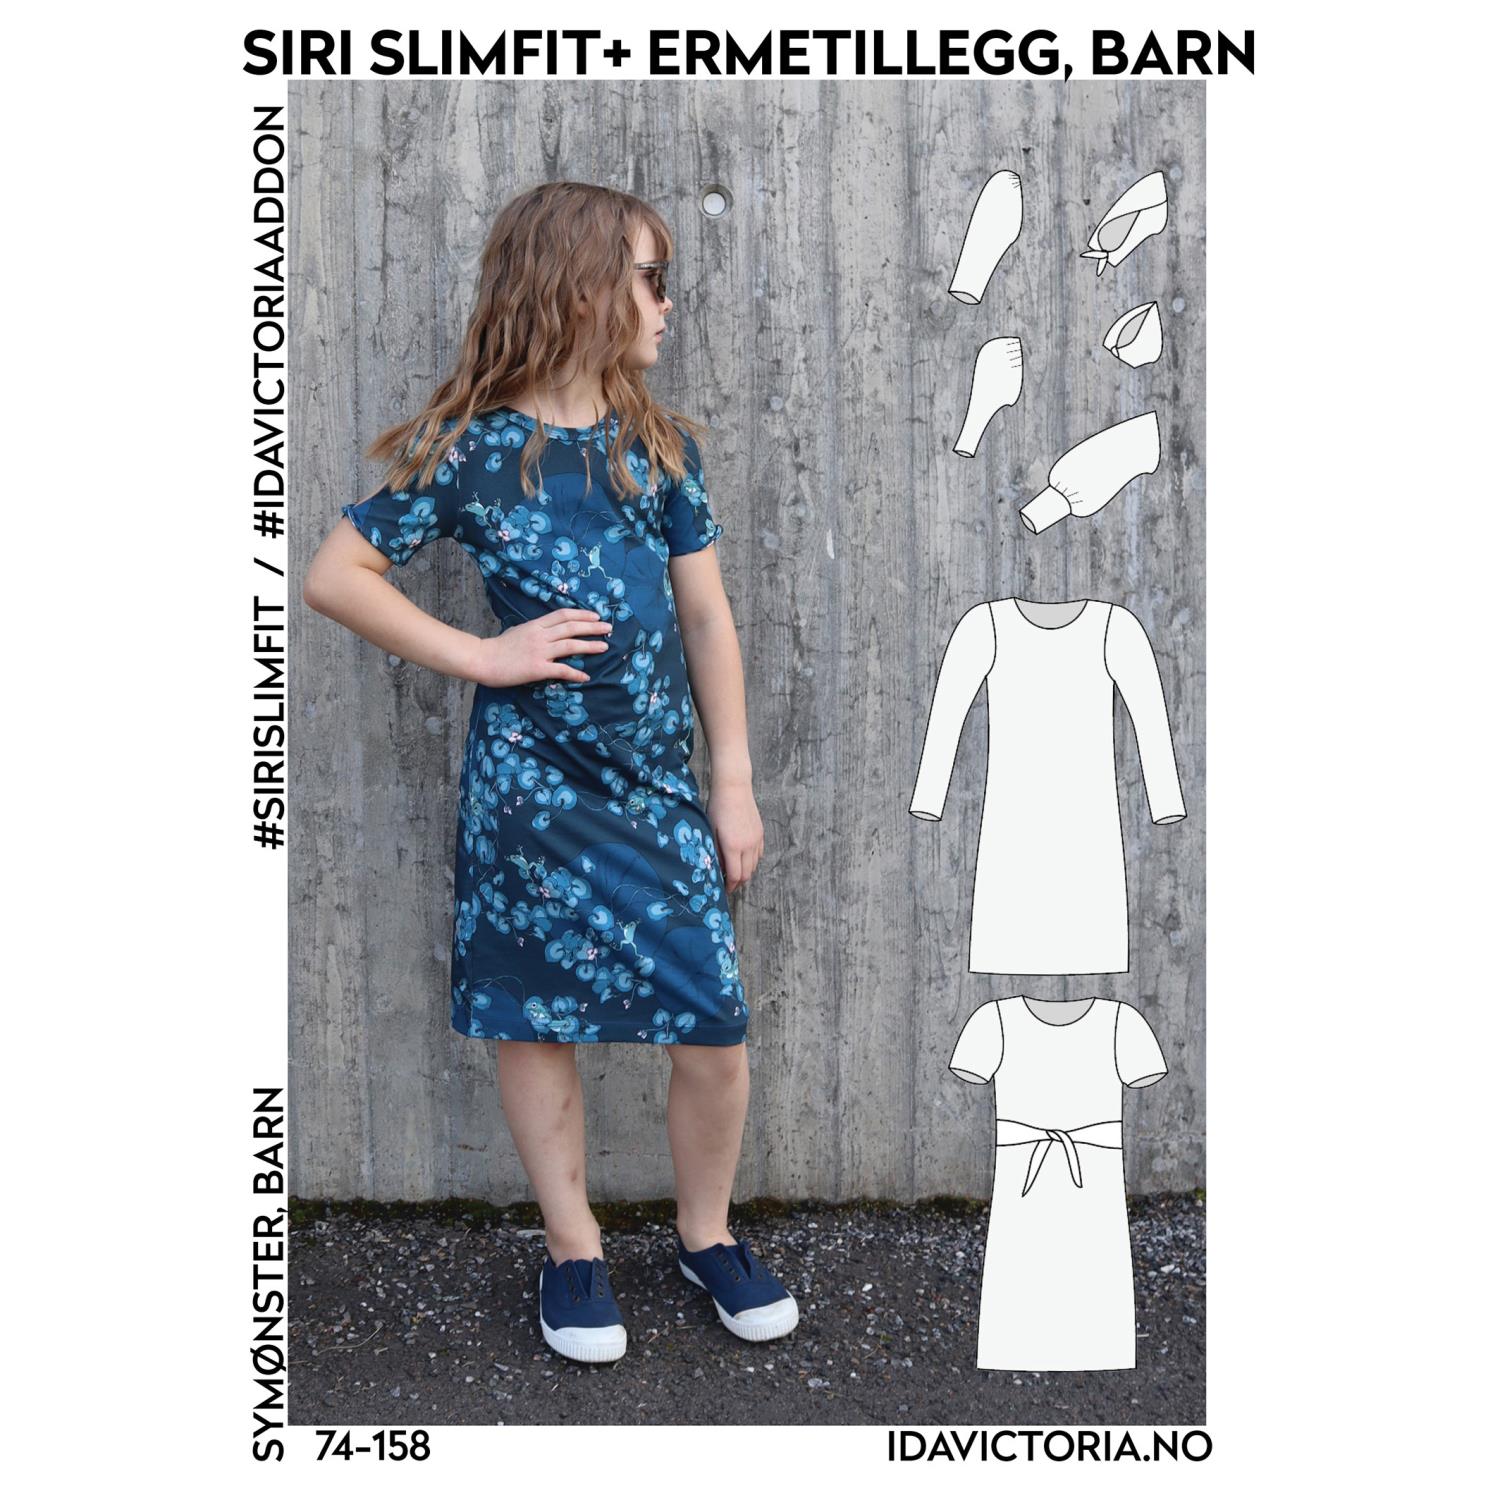 Ida Victoria - Siri Slimfit + Ermetillegg til barn